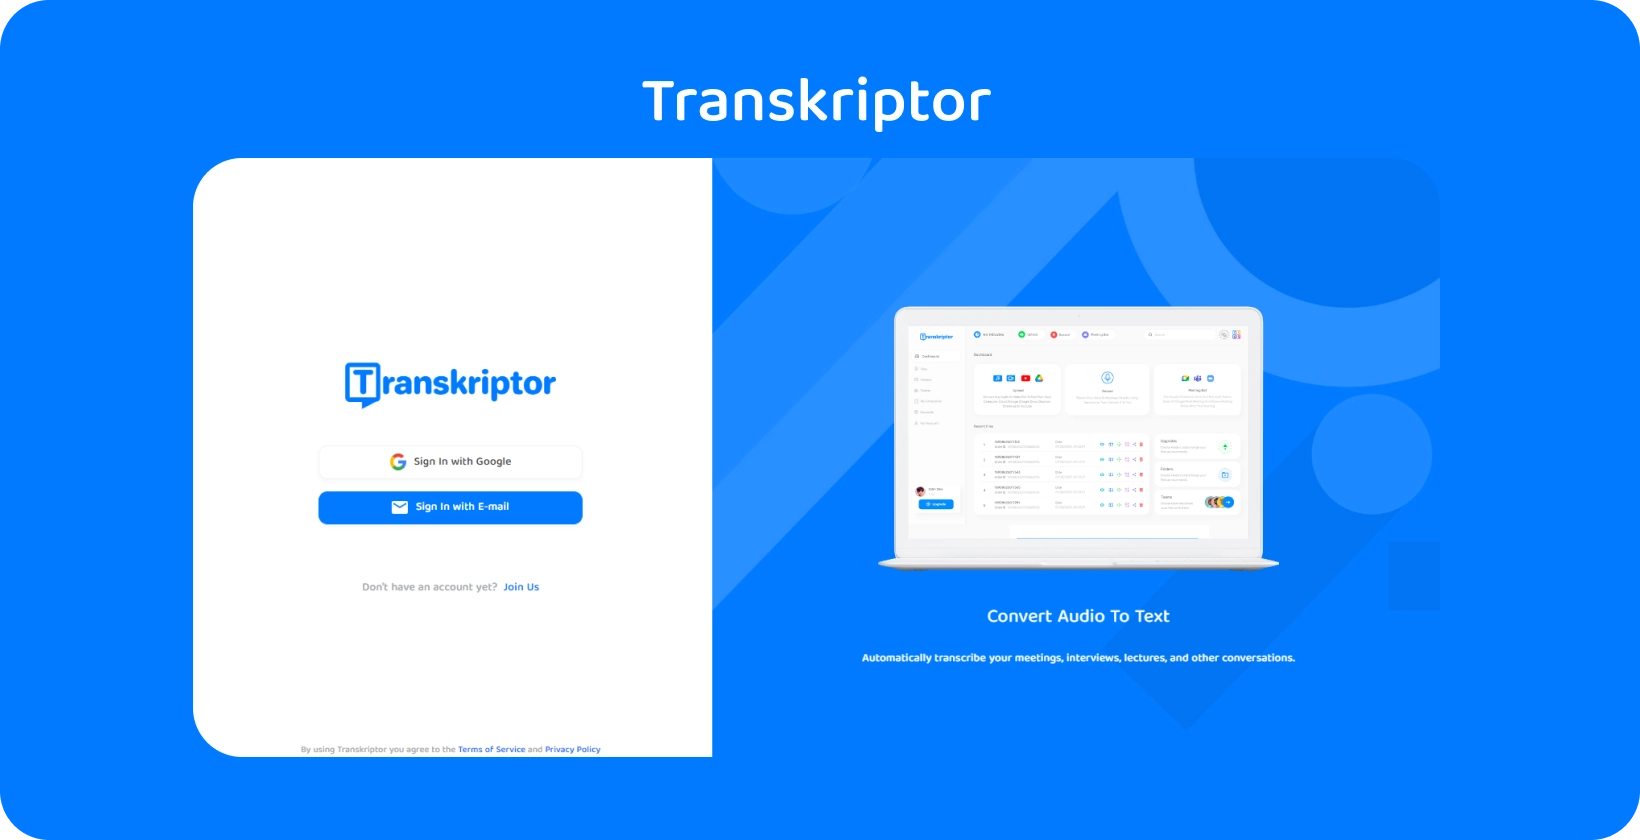 Transkriptor interfejs aplikacije koji pokazuje jednostavan zvuk uslugama transkripcije teksta za uvid u medicinske kartone.